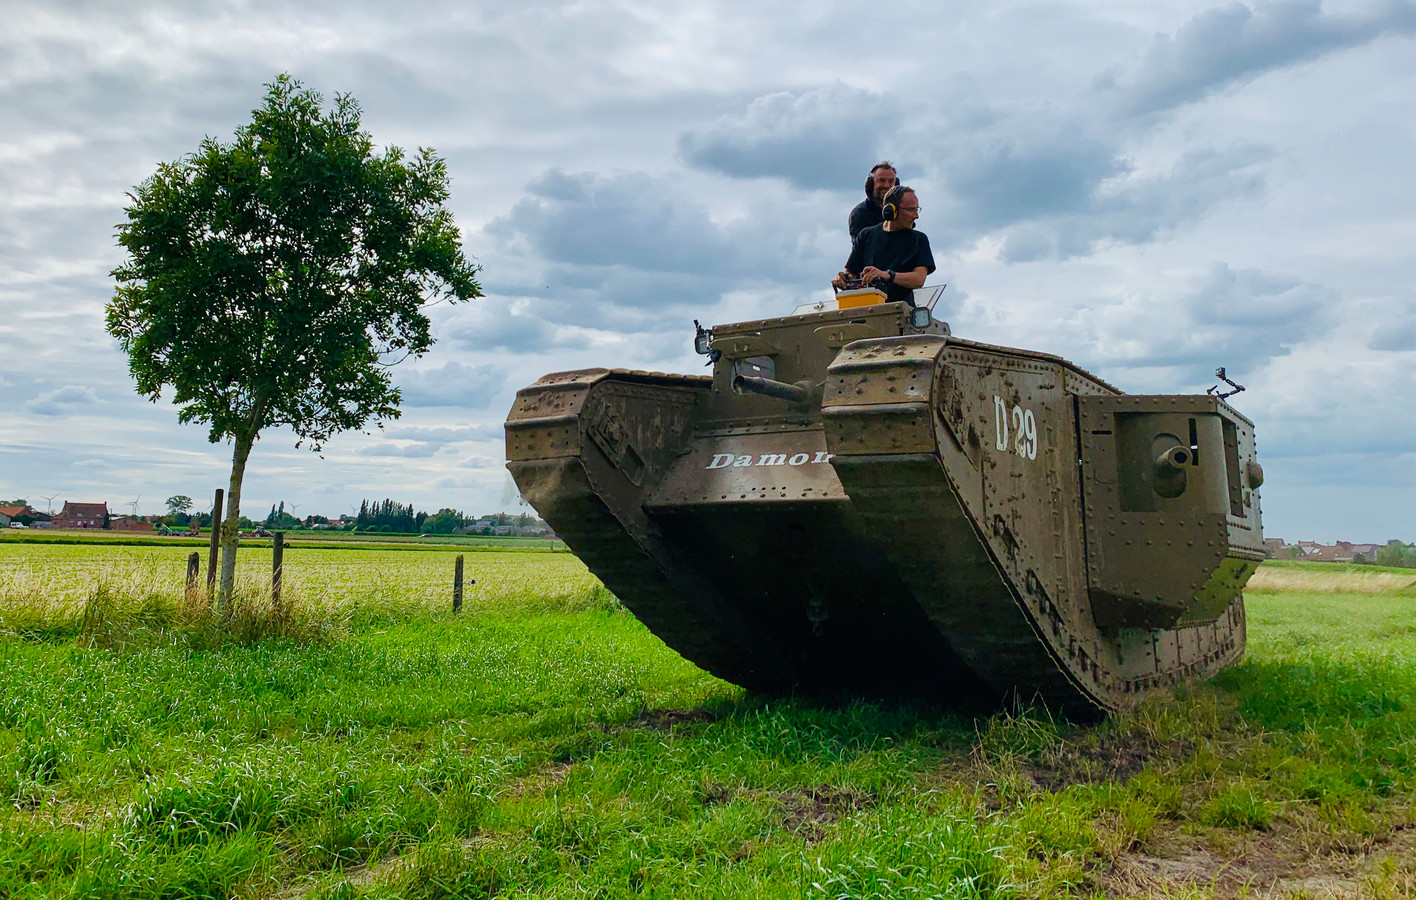 In de eerste aflevering van zondag bezoekt Tom onder meer een West-Vlaming die eigenhandig een tank uit de Eerste Wereldoorlog nabouwde.